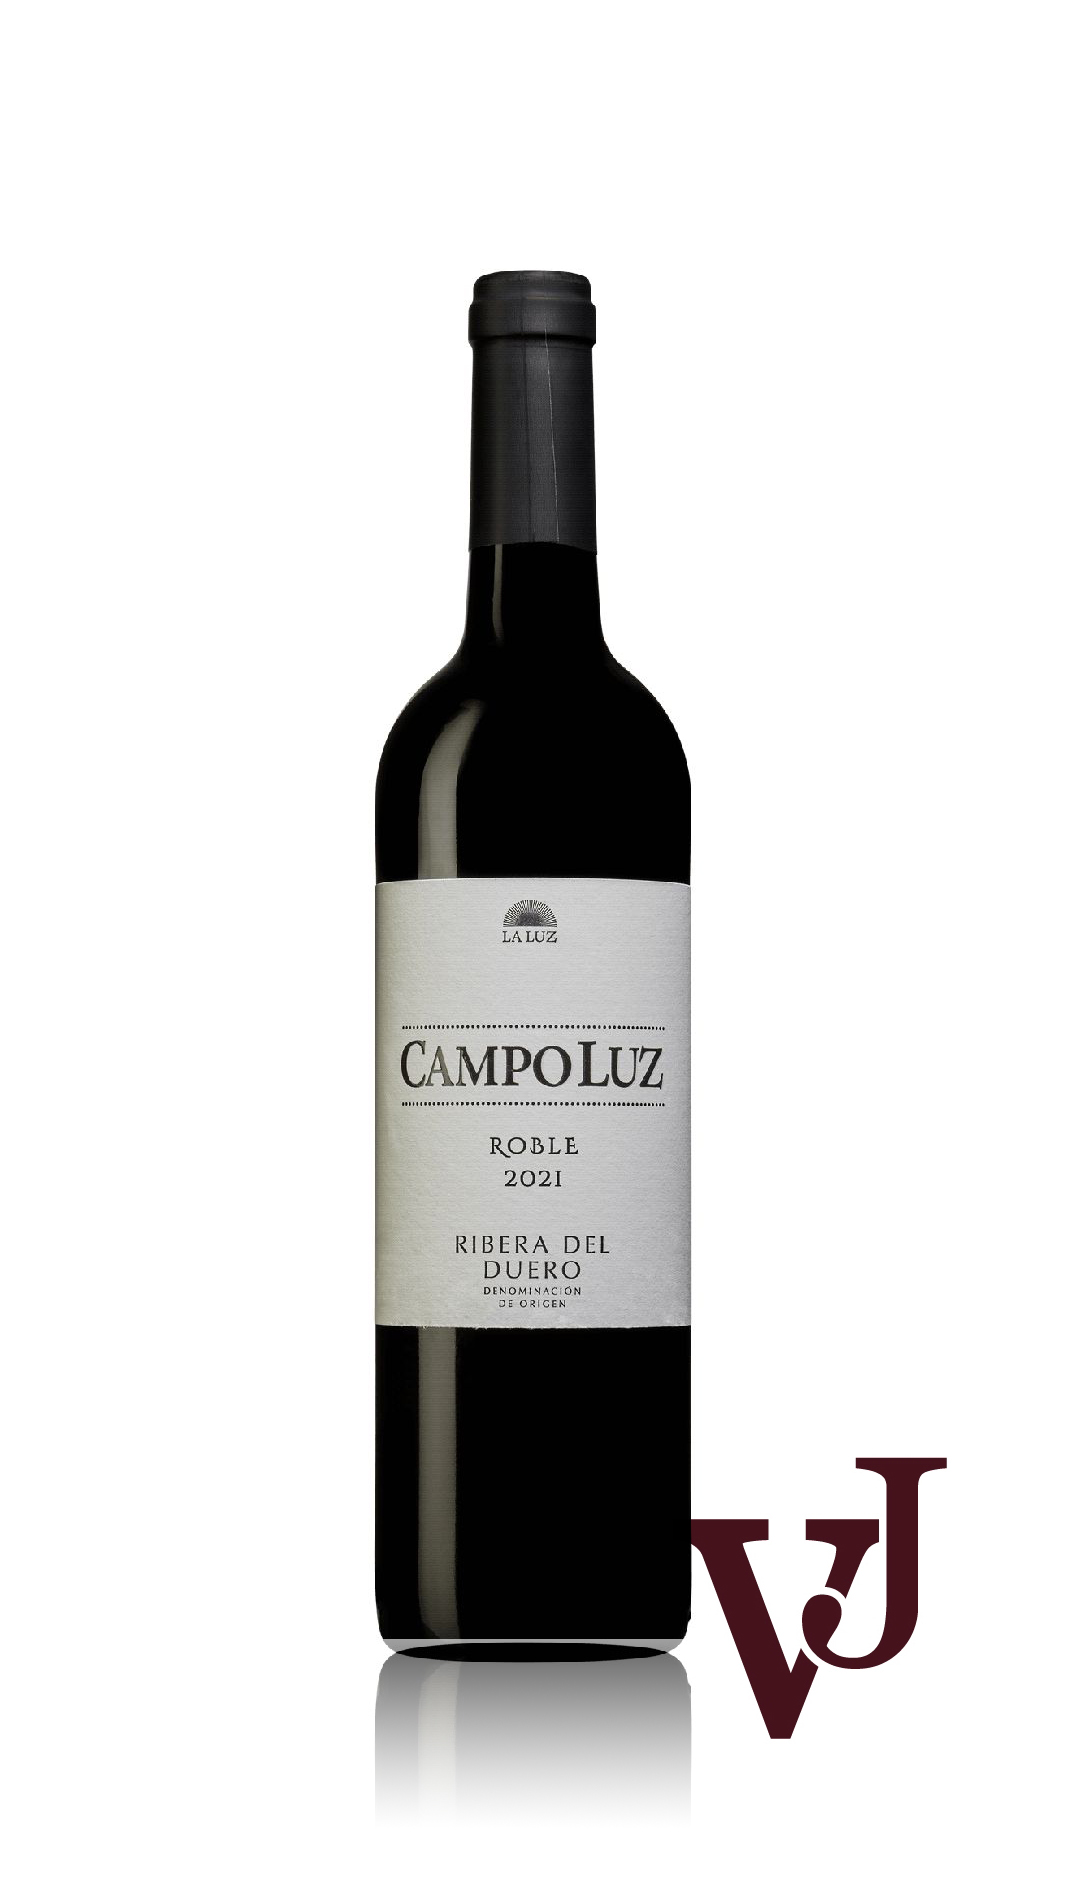 Rött Vin - Campo Luz Roble 2021 artikel nummer 109801 från producenten Vinos de la Luz från Spanien